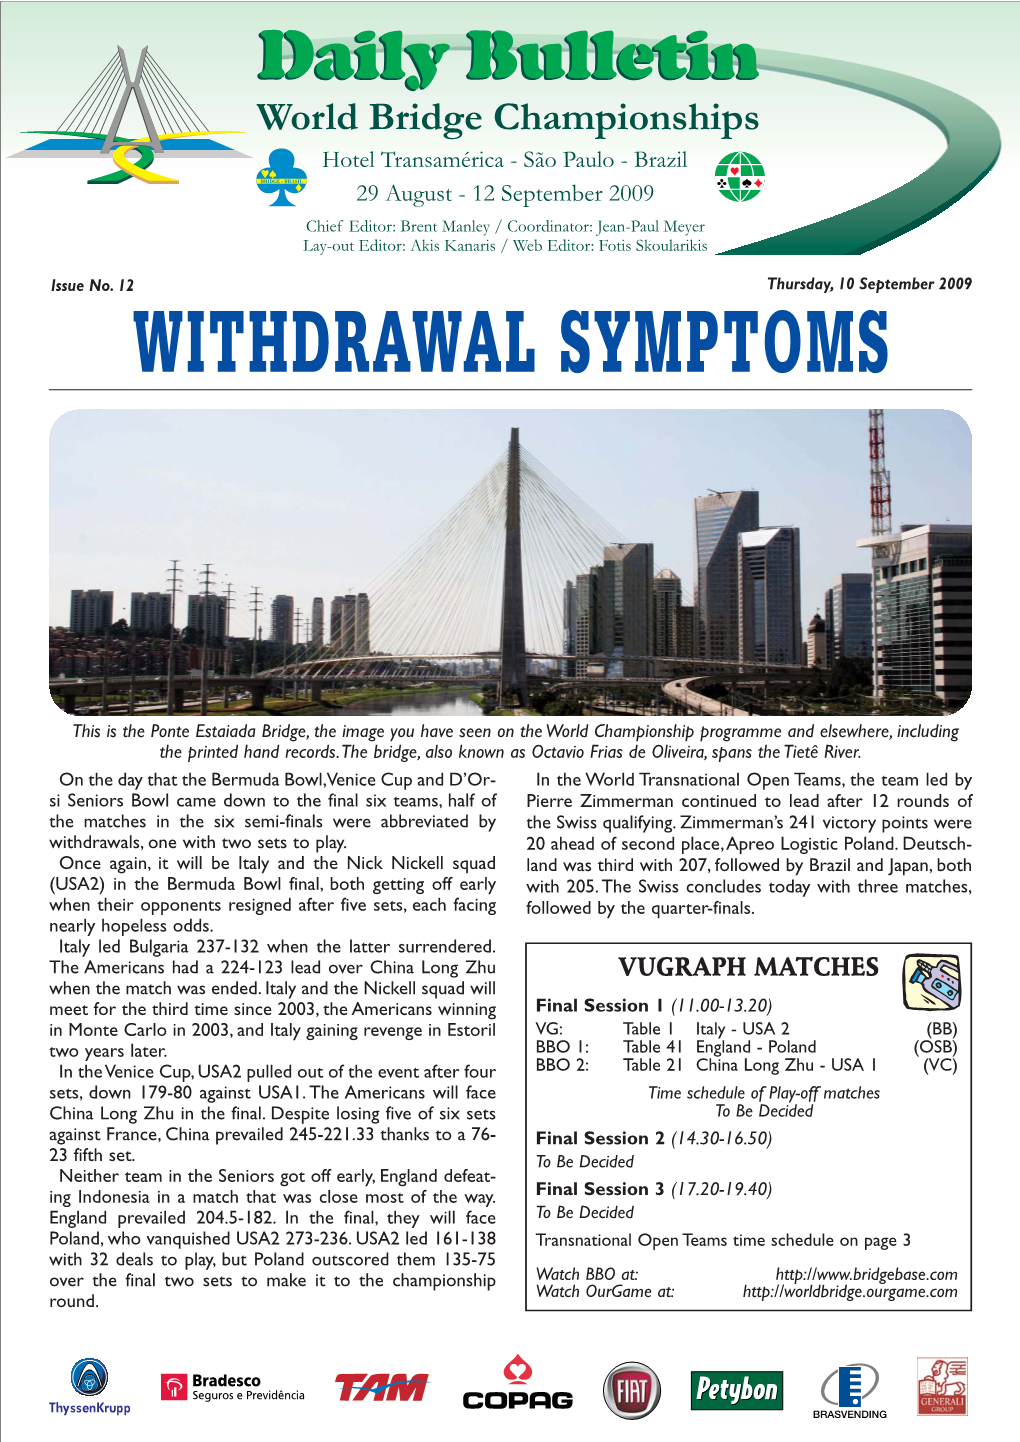 WITHDRAWAL Symptomsthursday, 10 September 2009